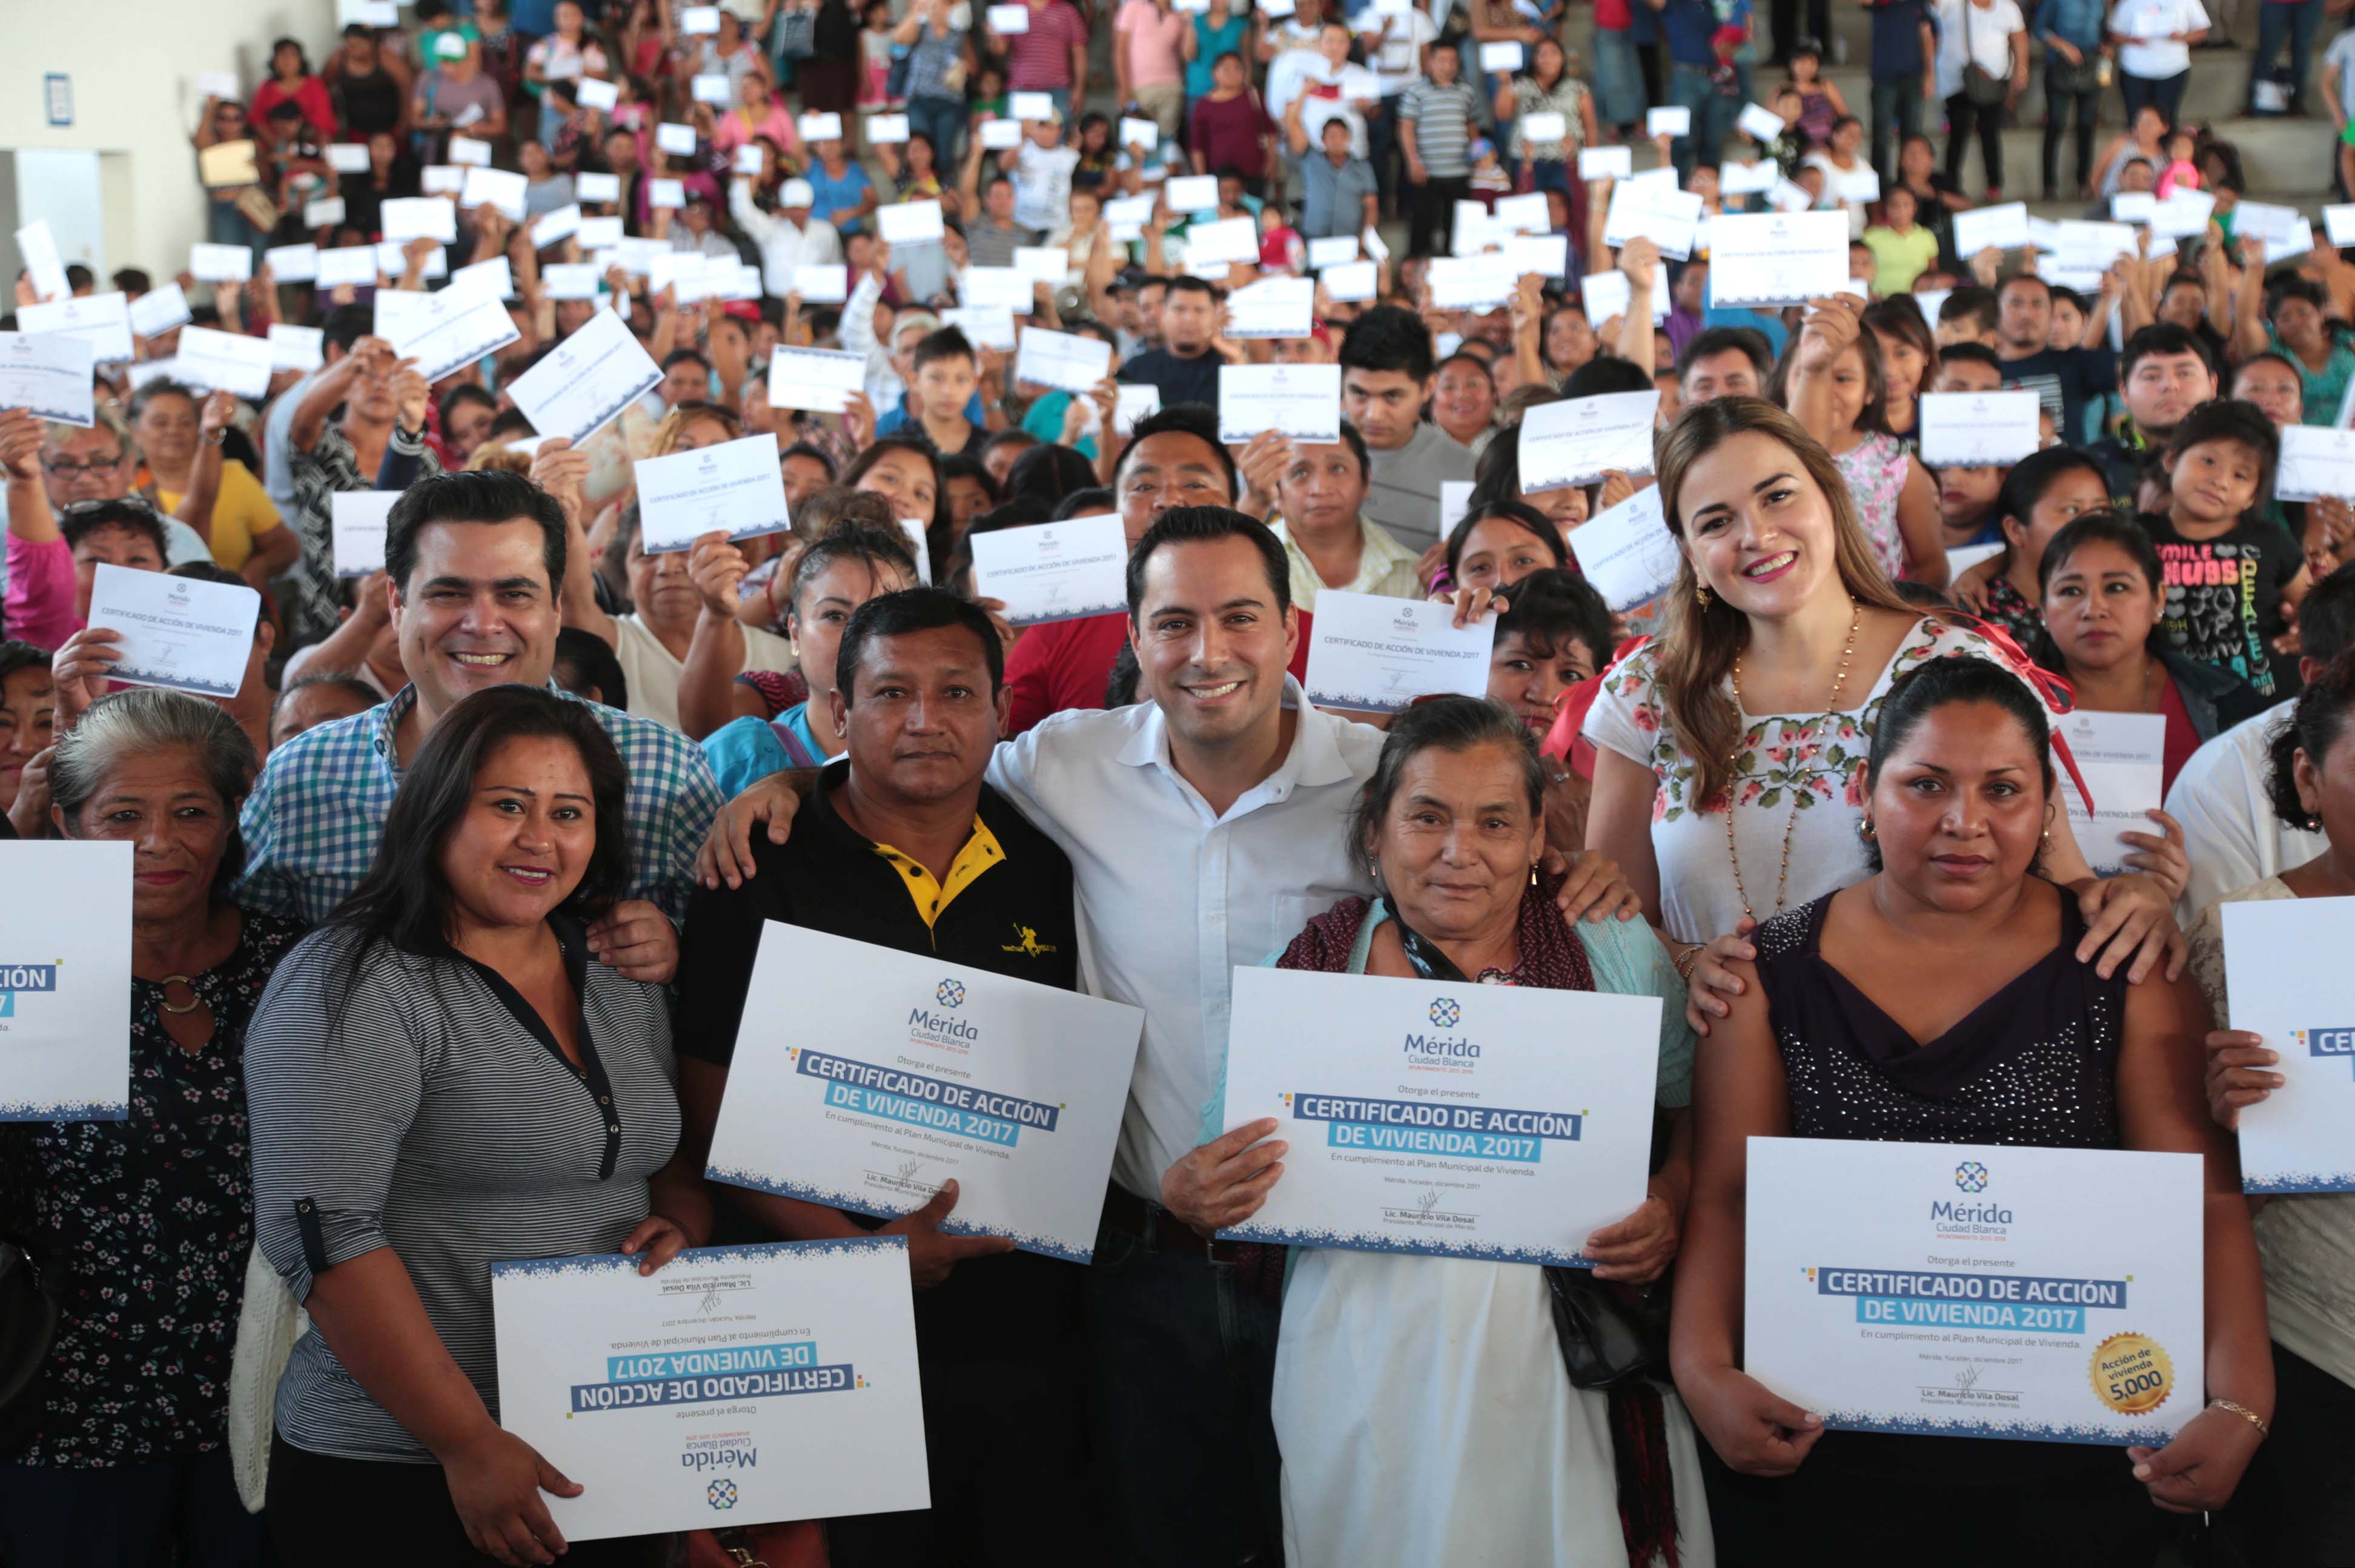 Certificado número cinco mil de acciones de vivienda en Mérida